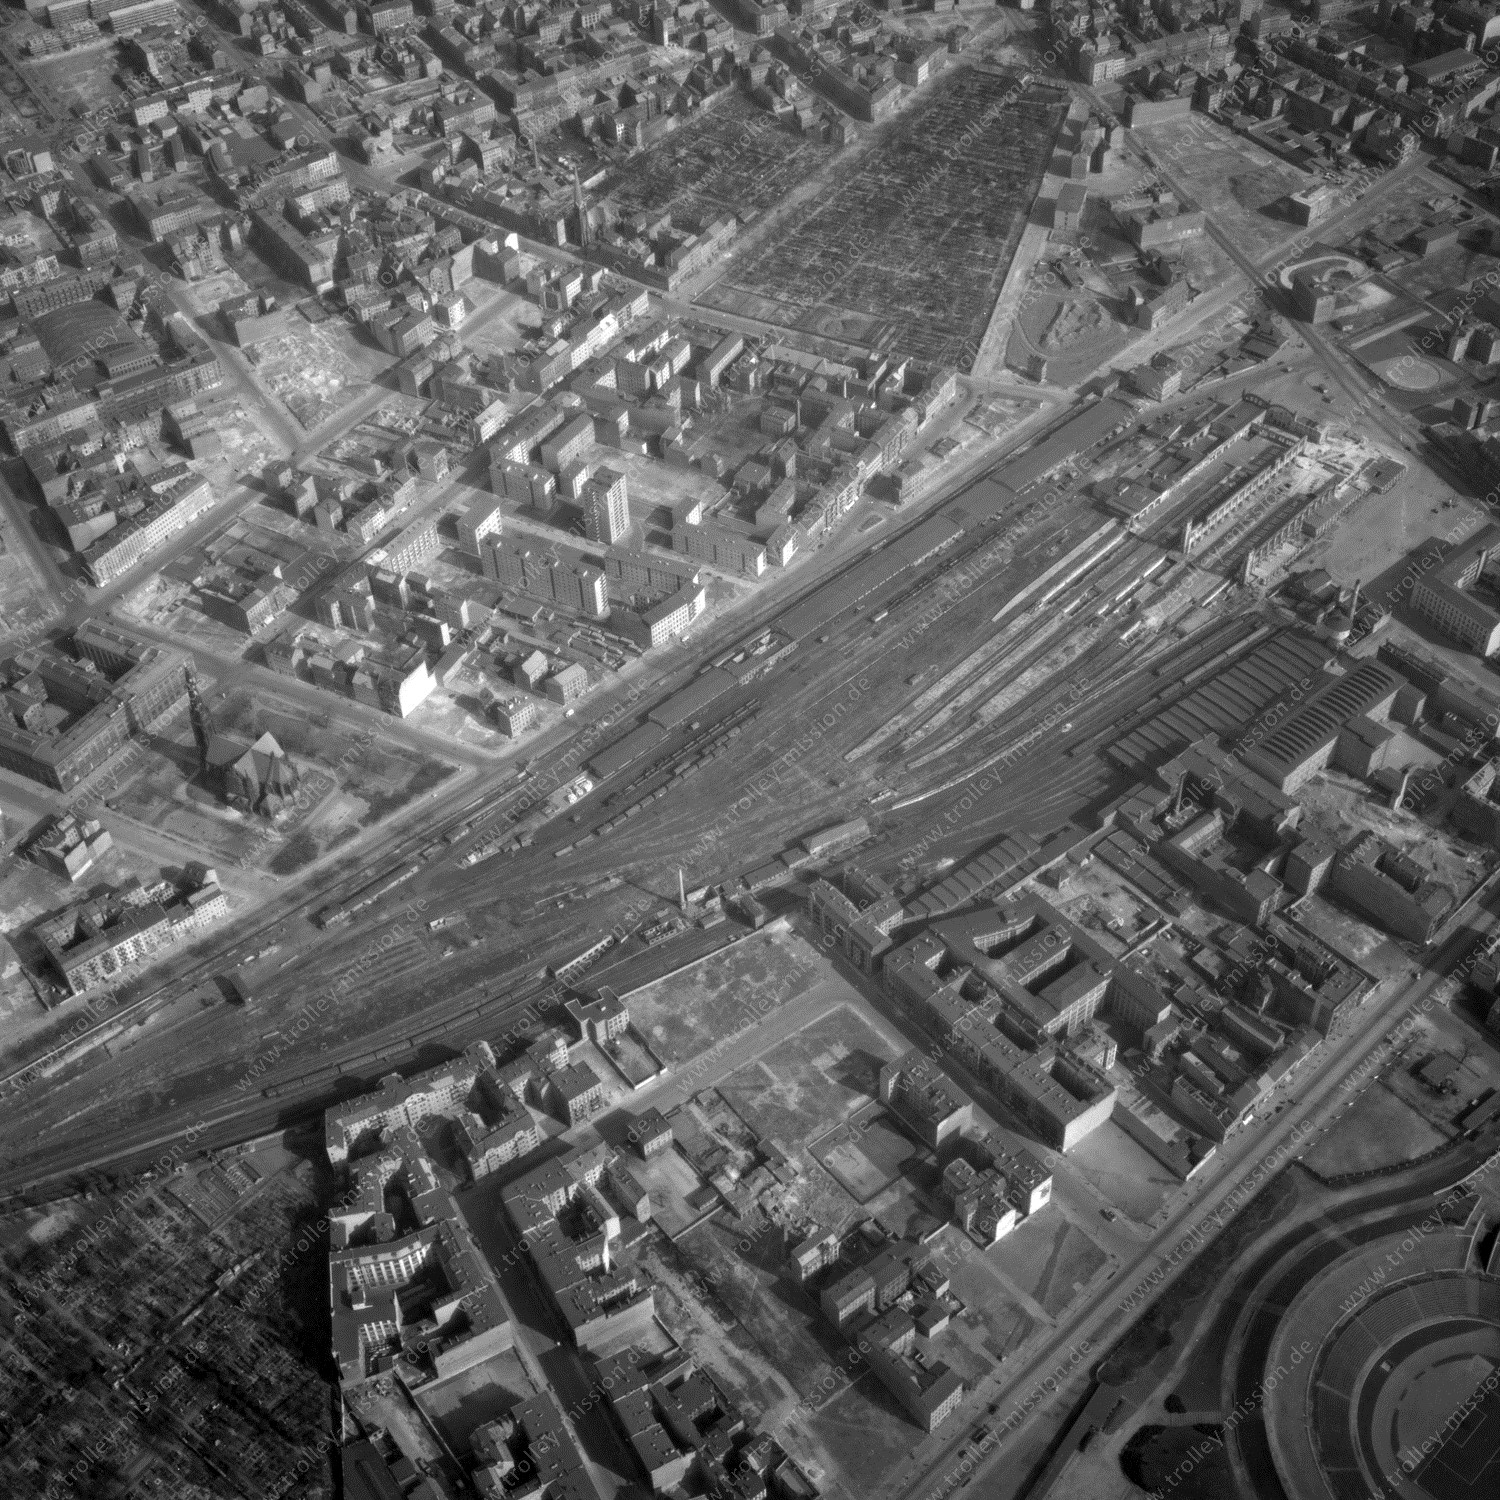 Alte Fotos und Luftbilder von Berlin - Luftbildaufnahme Nr. 02 - Historische Luftaufnahmen von West-Berlin aus dem Jahr 1954 - Flugstrecke Romeo